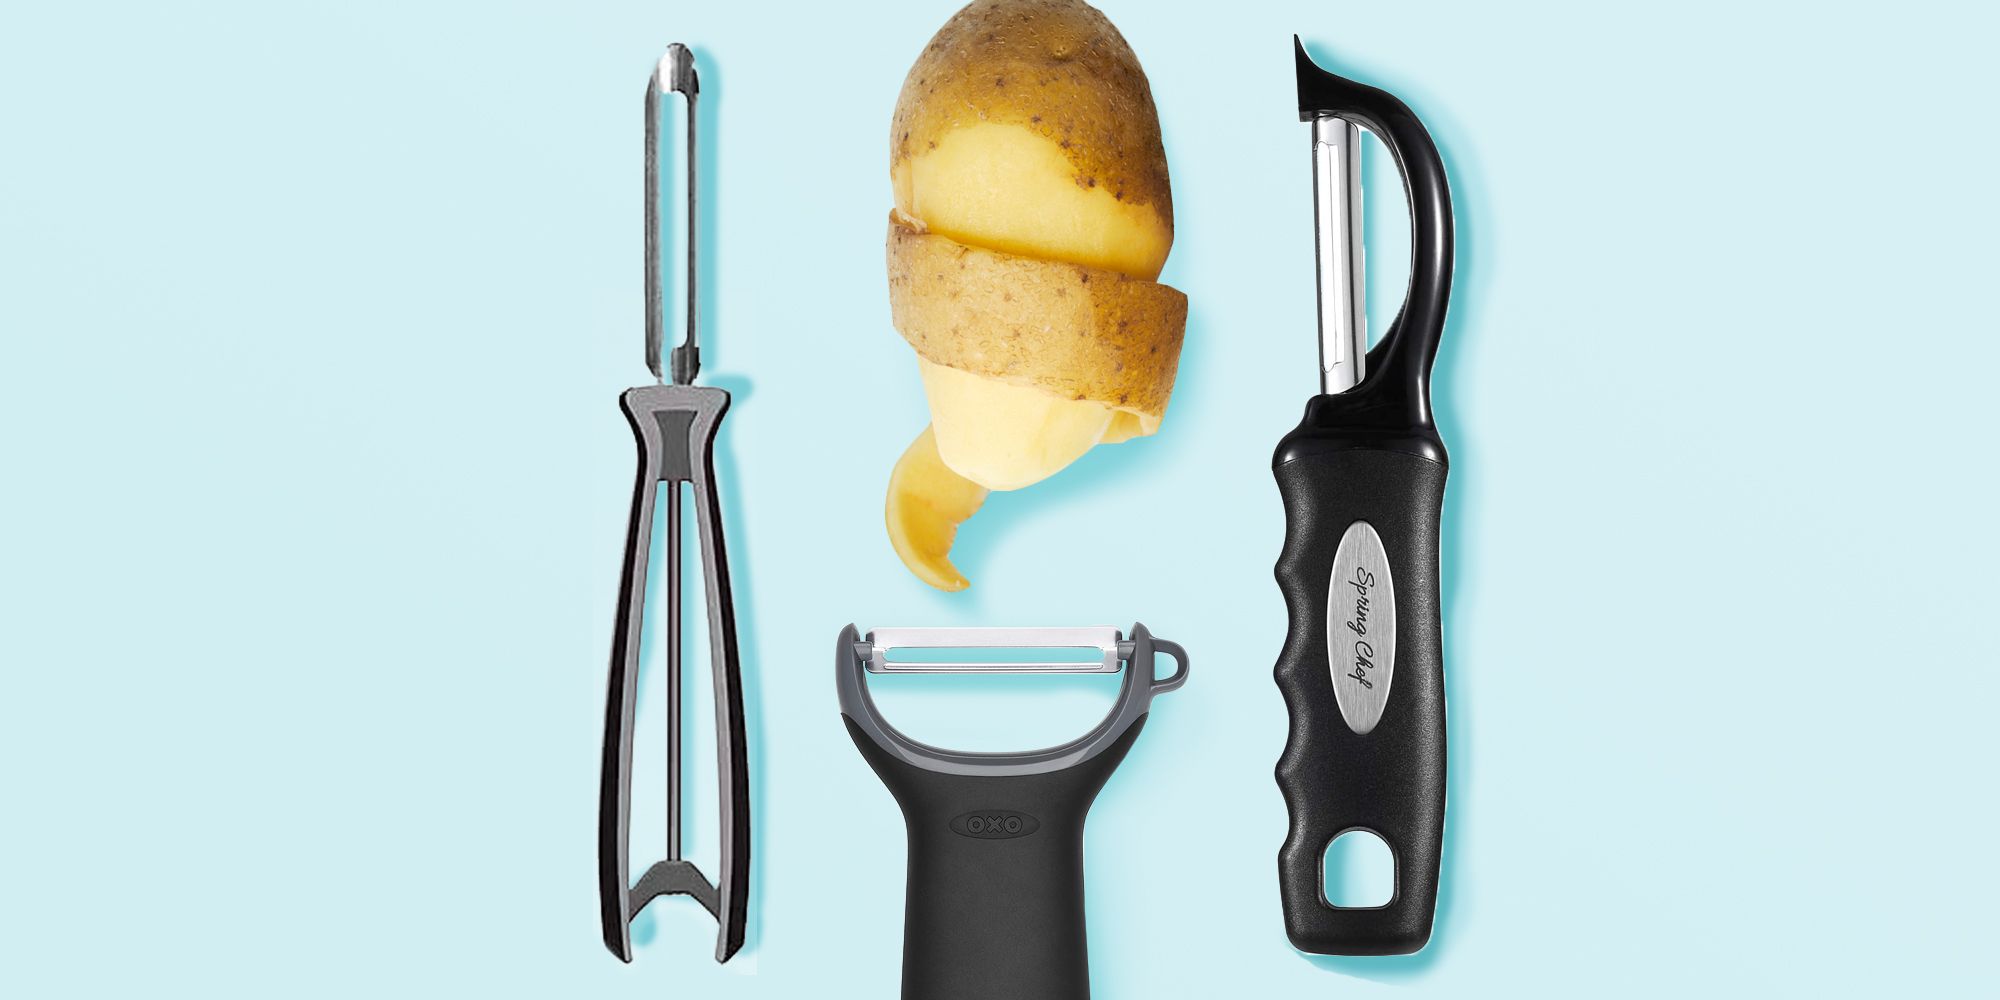 Spring Chef Vegetable Peeler Set with Stainless Steel Swivel Blade for Potato Citrus Apple Carrot